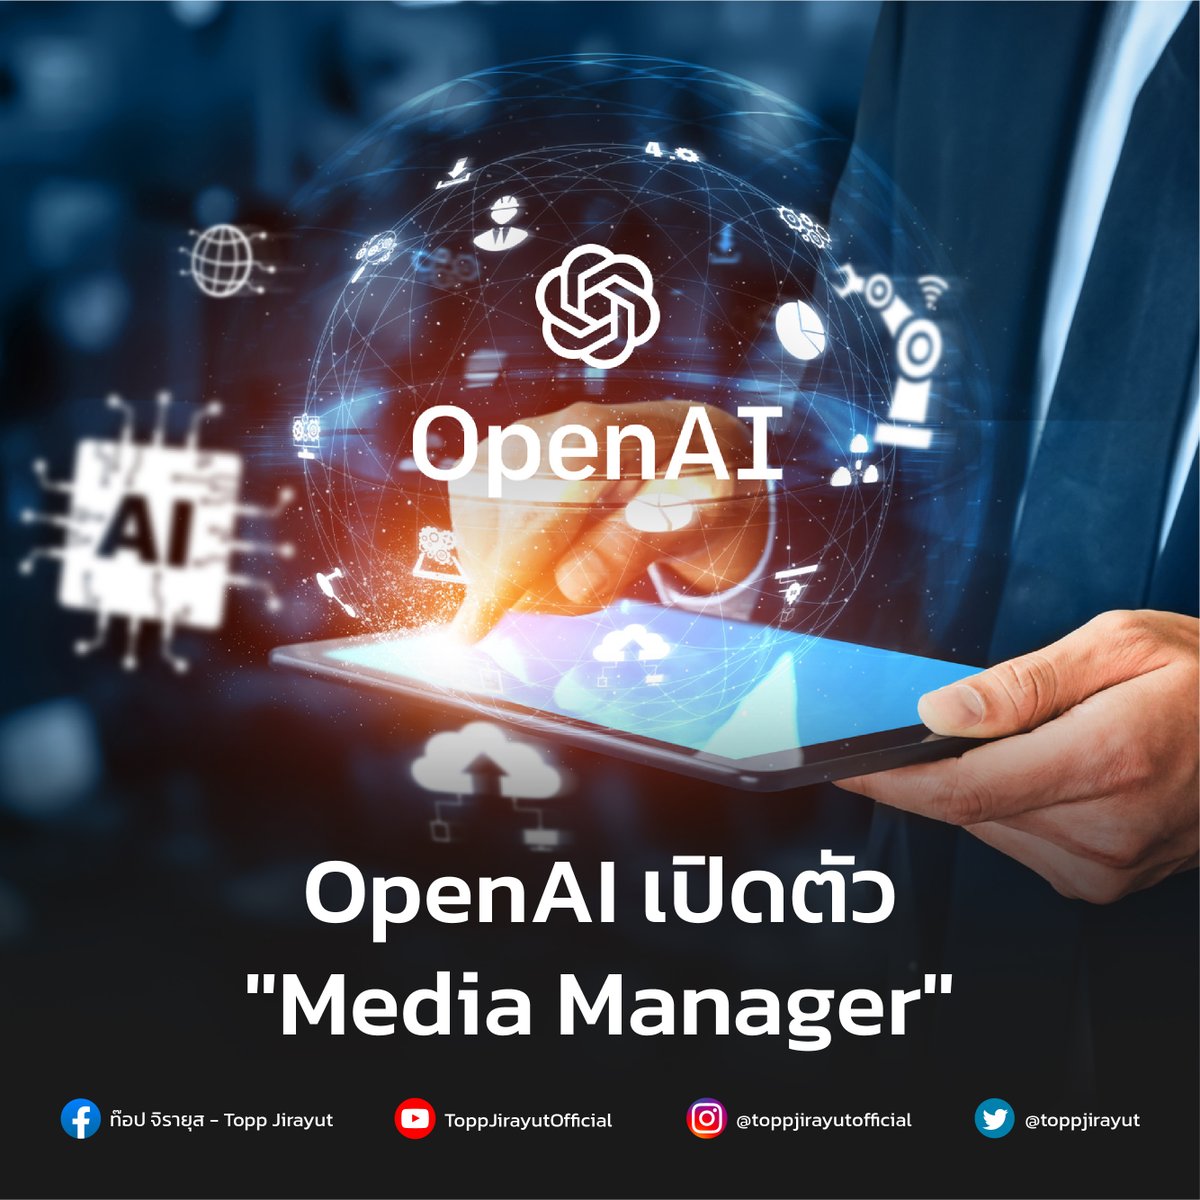 ตอนนี้ OpenAI มีแผนที่จะพัฒนาเครื่องมือใหม่ที่มีชื่อว่า 'Media Manager' ซึ่งจะช่วยให้ผู้สร้างสามารถควบคุมวิธีการใช้งานของตนในการฝึกโมเดล AI เครื่องมือนี้สามารถสร้างมาตรฐานใหม่ในอุตสาหกรรม AI ได้ 

bit.ly/4dvw2Oq  

#OpenAI #Toppjirayut #ท๊อปจิรายุส